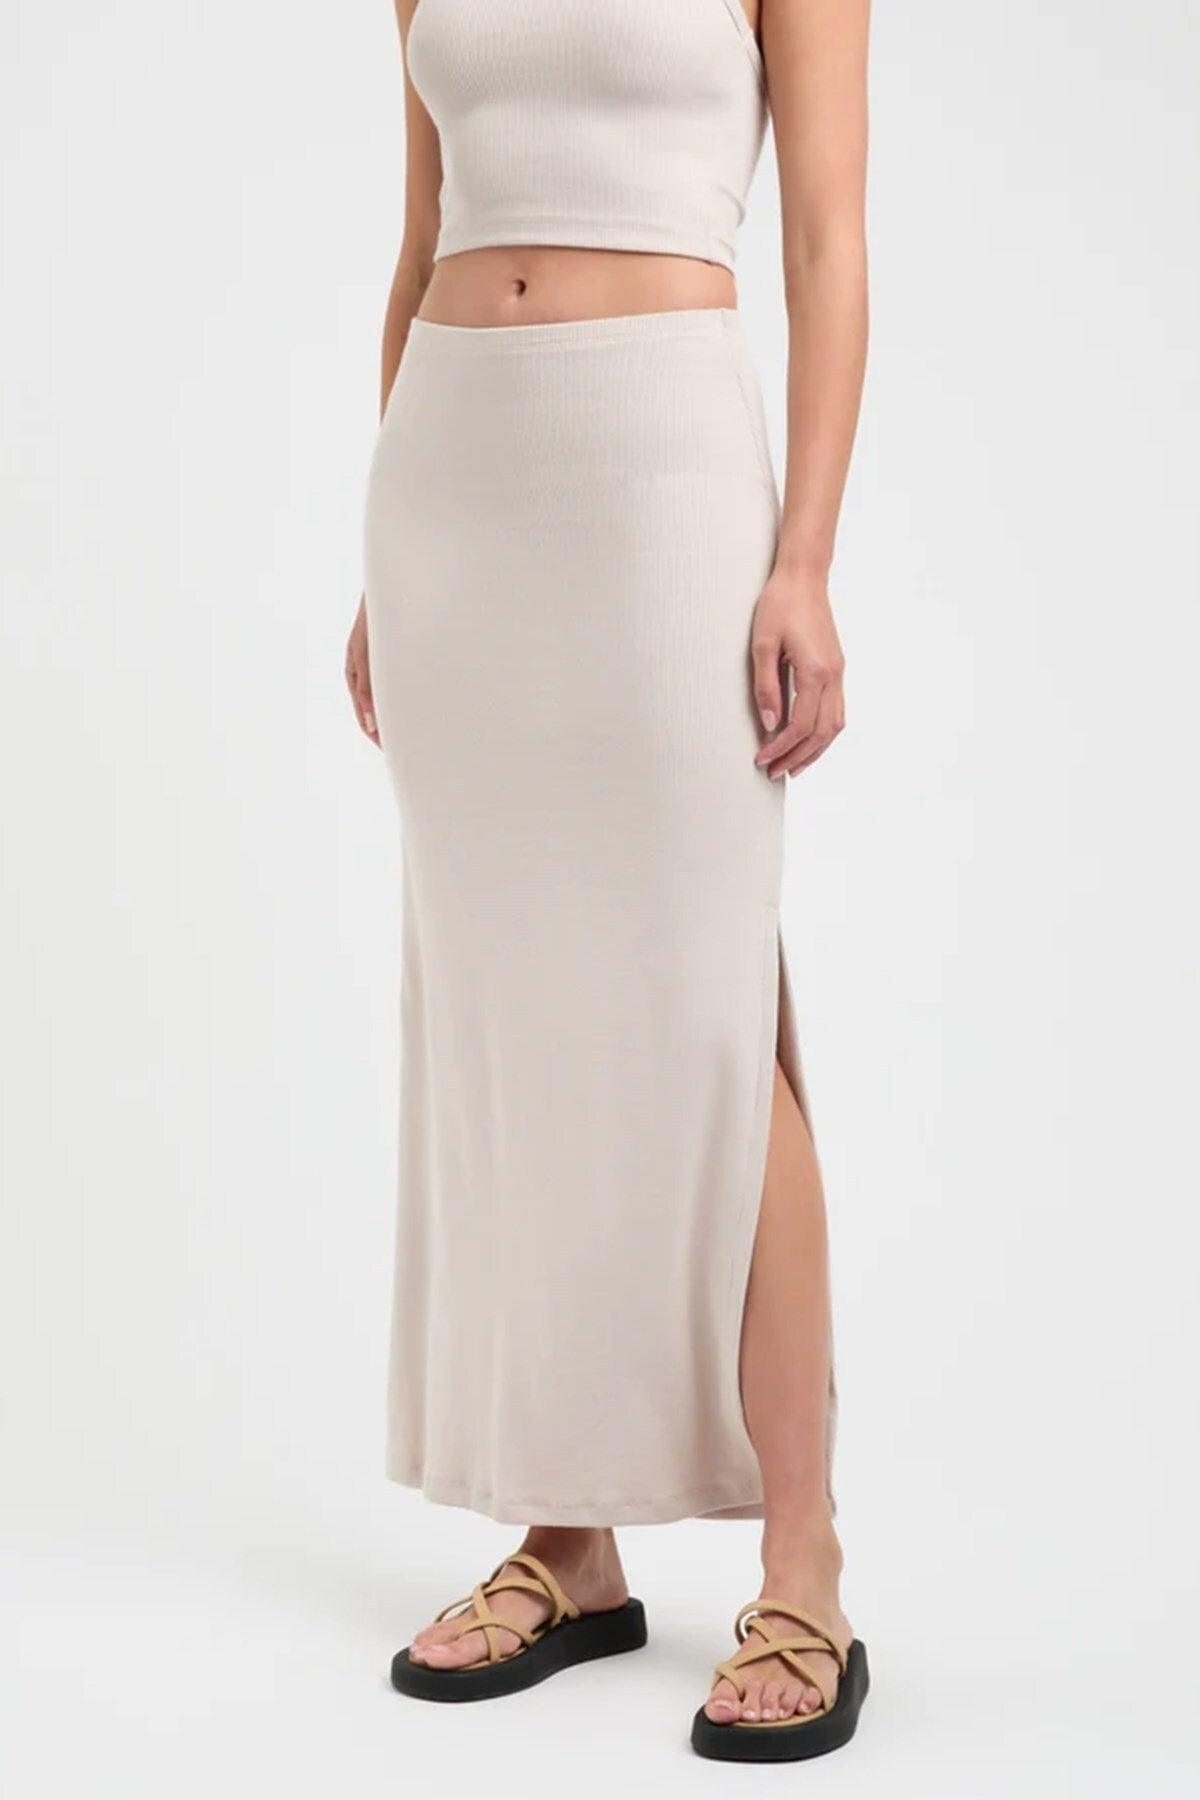 Beige Basic Women's Long Skirt With Slit Detail Mg1650 - Swordslife